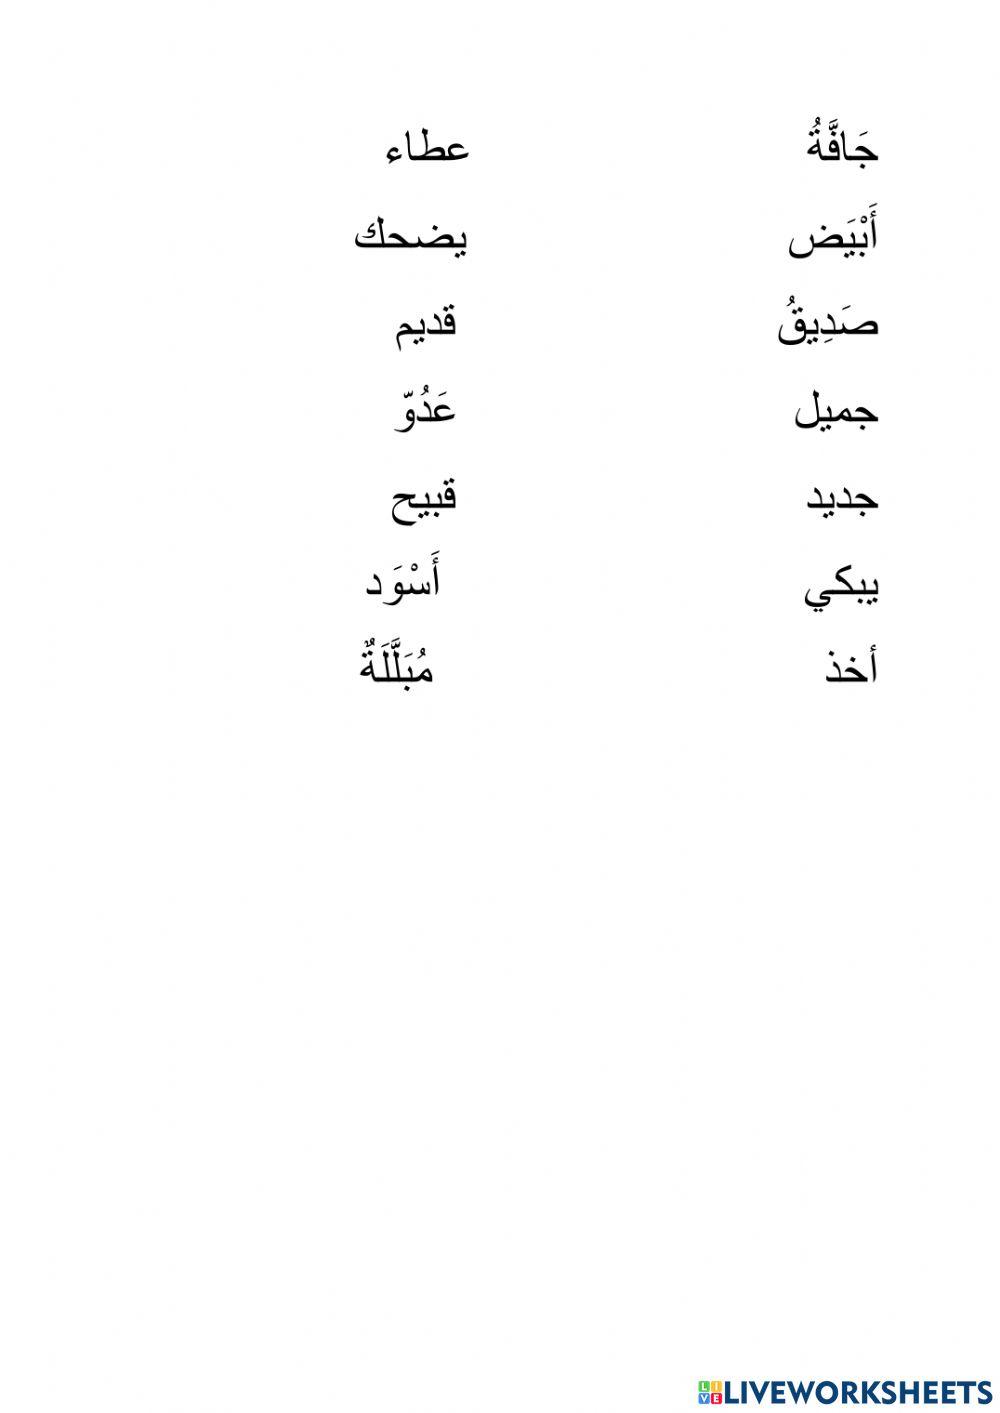 Arabic opposites